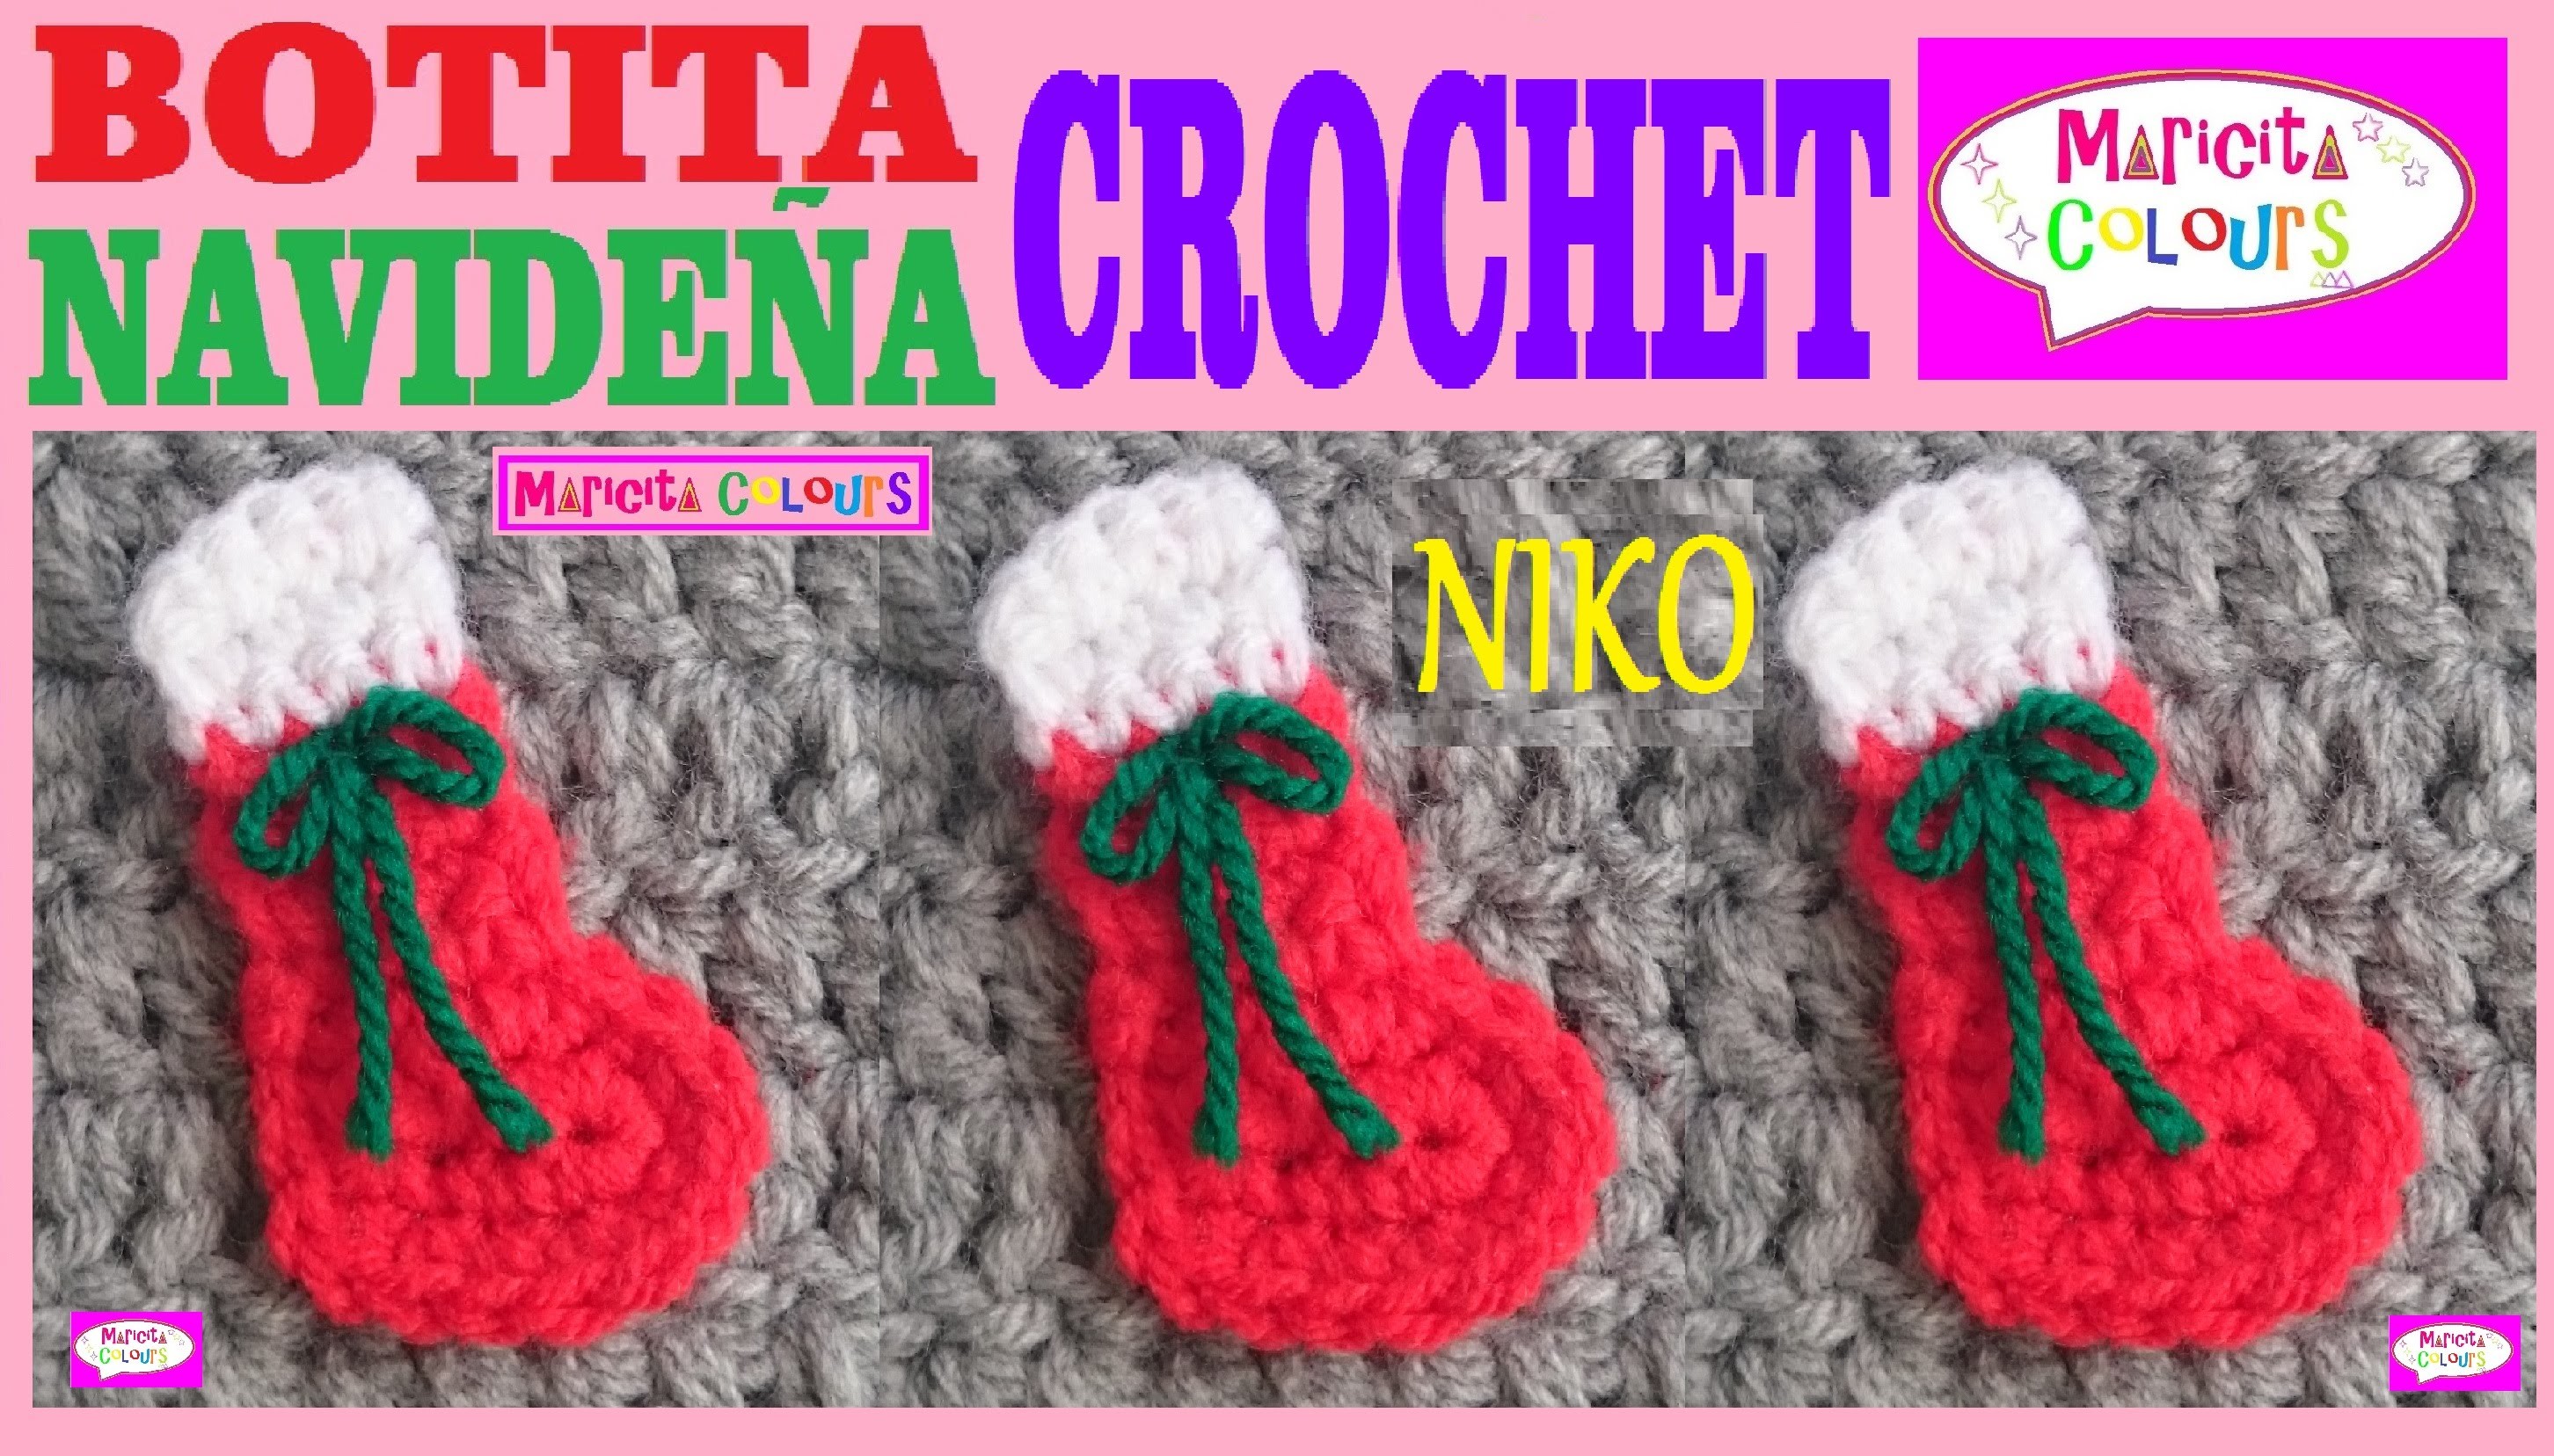 Botita Navideña "NIKO" Miniatura a Crochet Aplicación por Maricita Colours